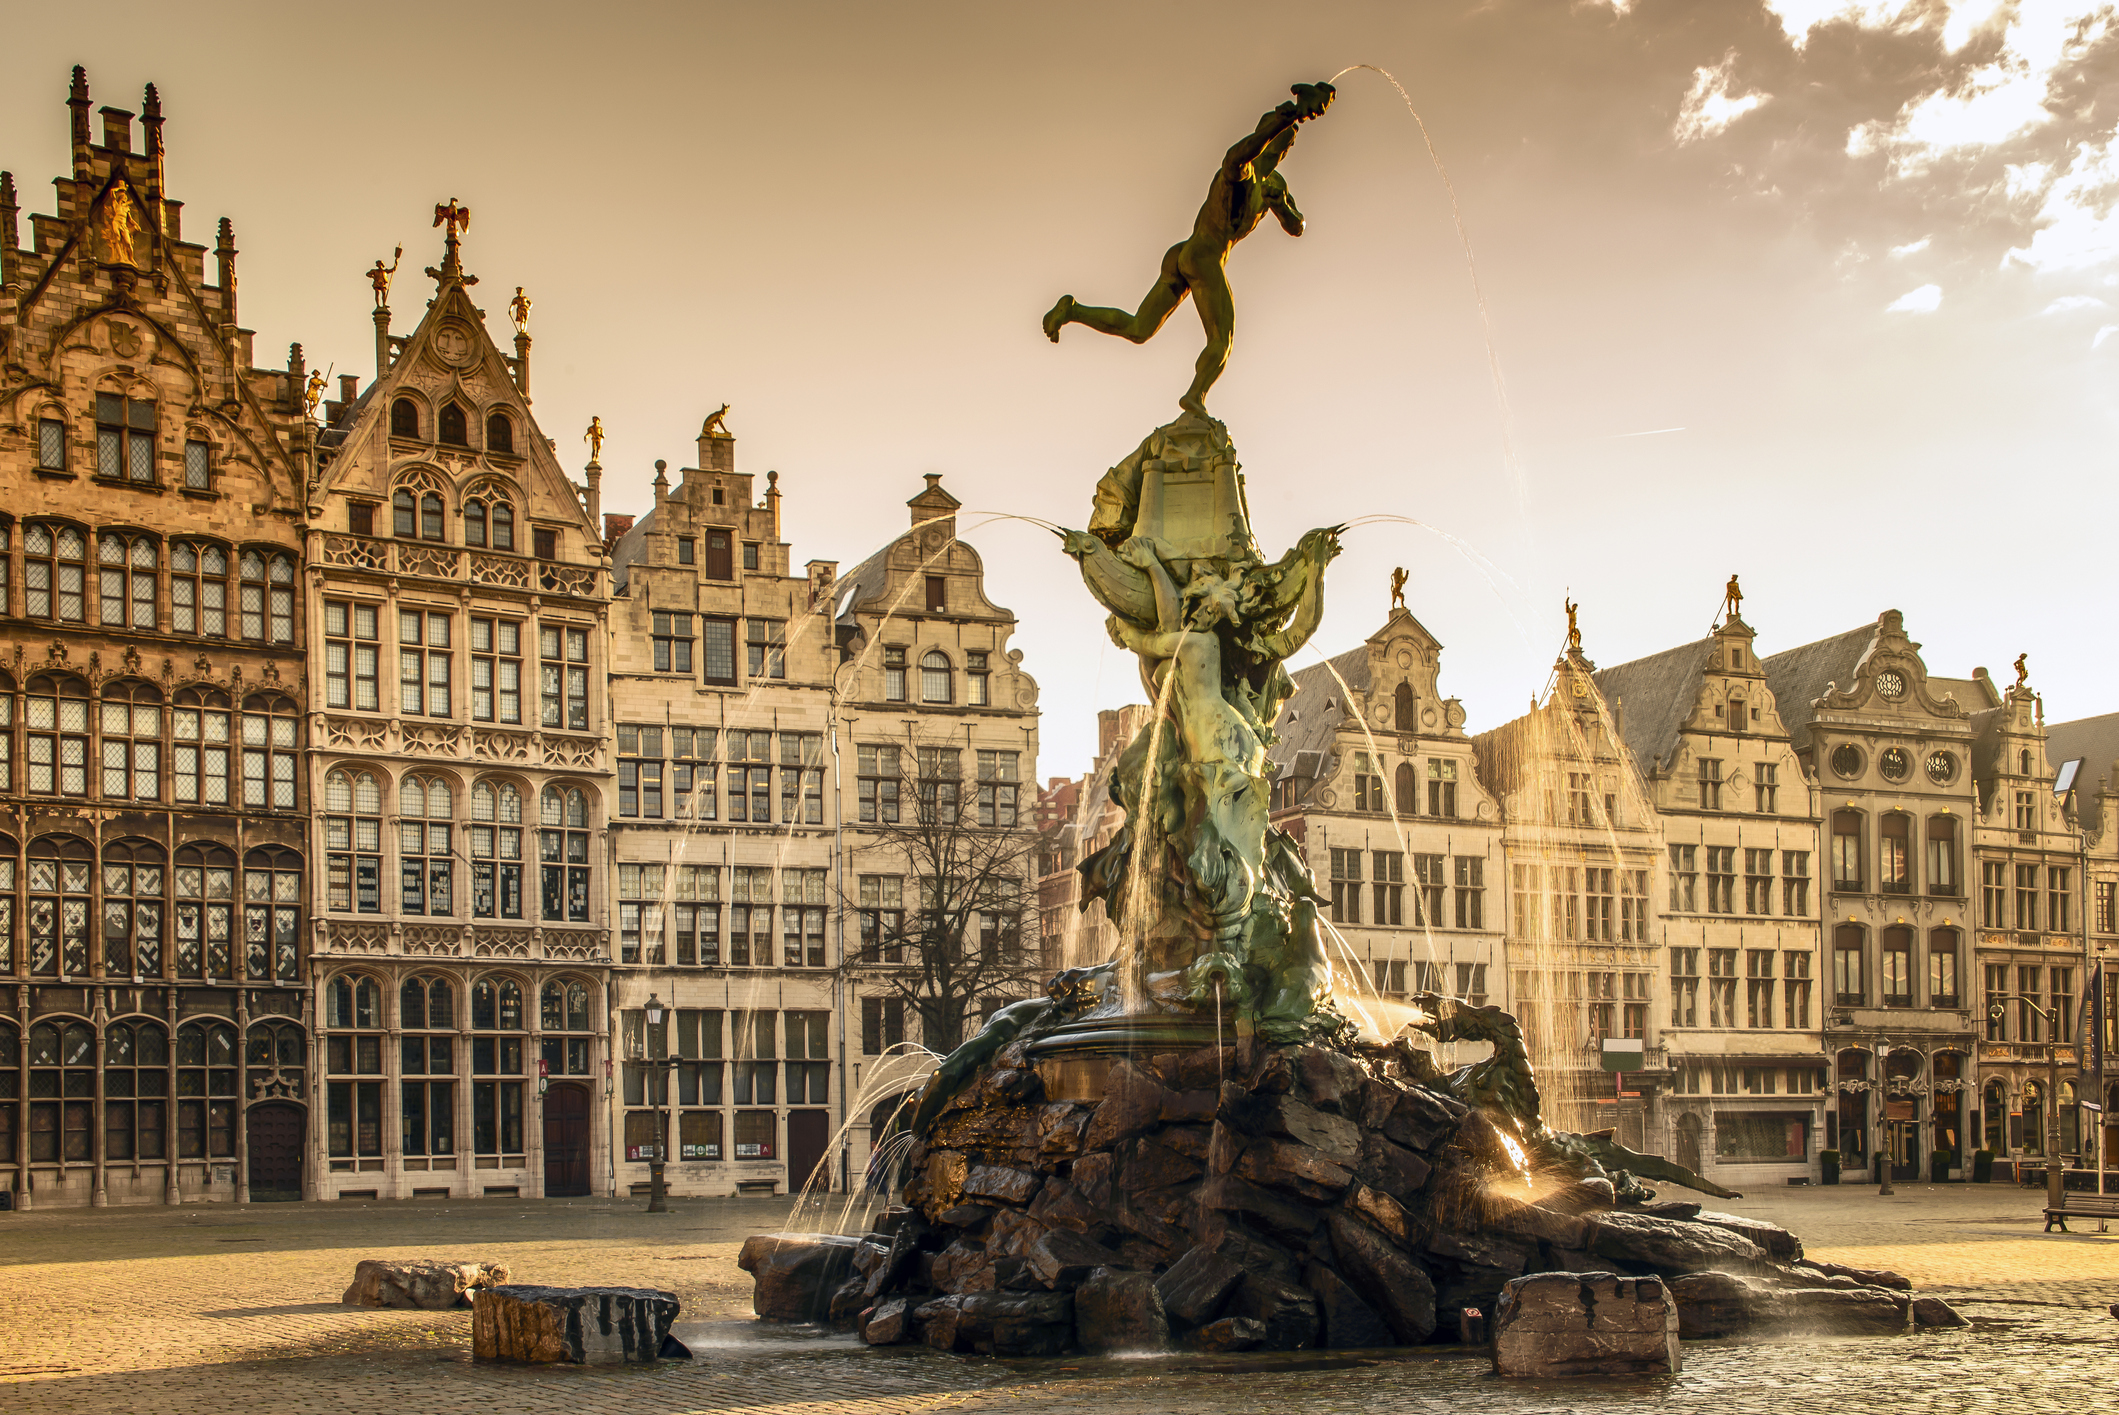 <strong>6. Антверпен, Белгия</strong><br>
<br>
Някога най-големият град в Северна Европа, днес Атверпен е една от най-добре пазените тайни на този регион. Неофициалната столица на Фландрия е пълна с исторически съкровища и приютява изкуство и дизайн от световна класа.